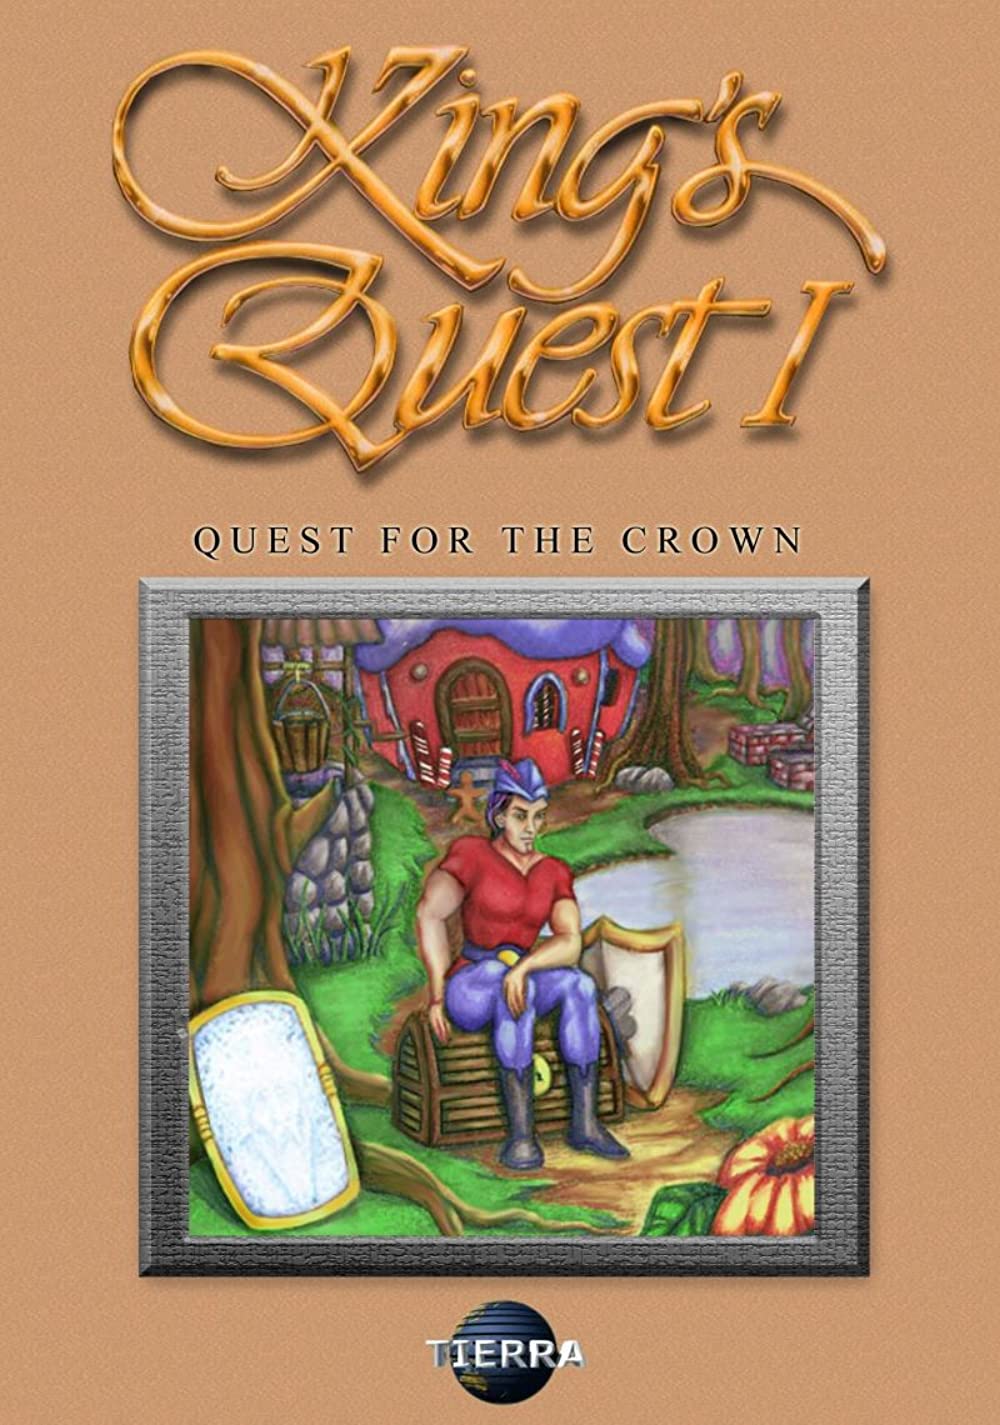 jaquette du jeu vidéo King's Quest I: Quest for the Crown